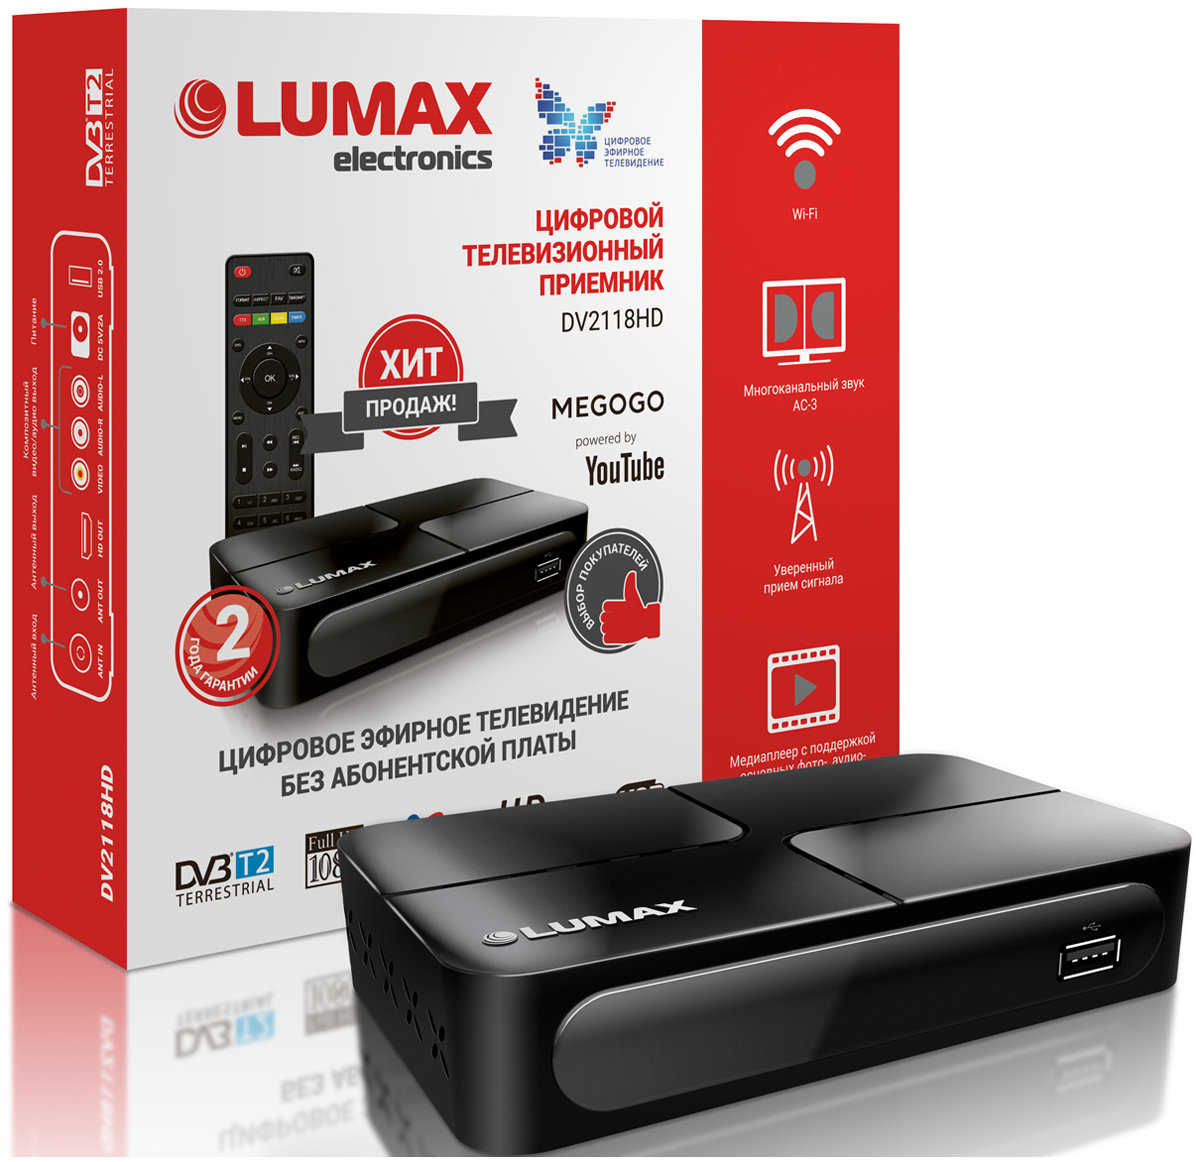 Цифровой телевизионный ресивер Lumax DV 2118 HD цифровой тюнер lumax dv4205hd